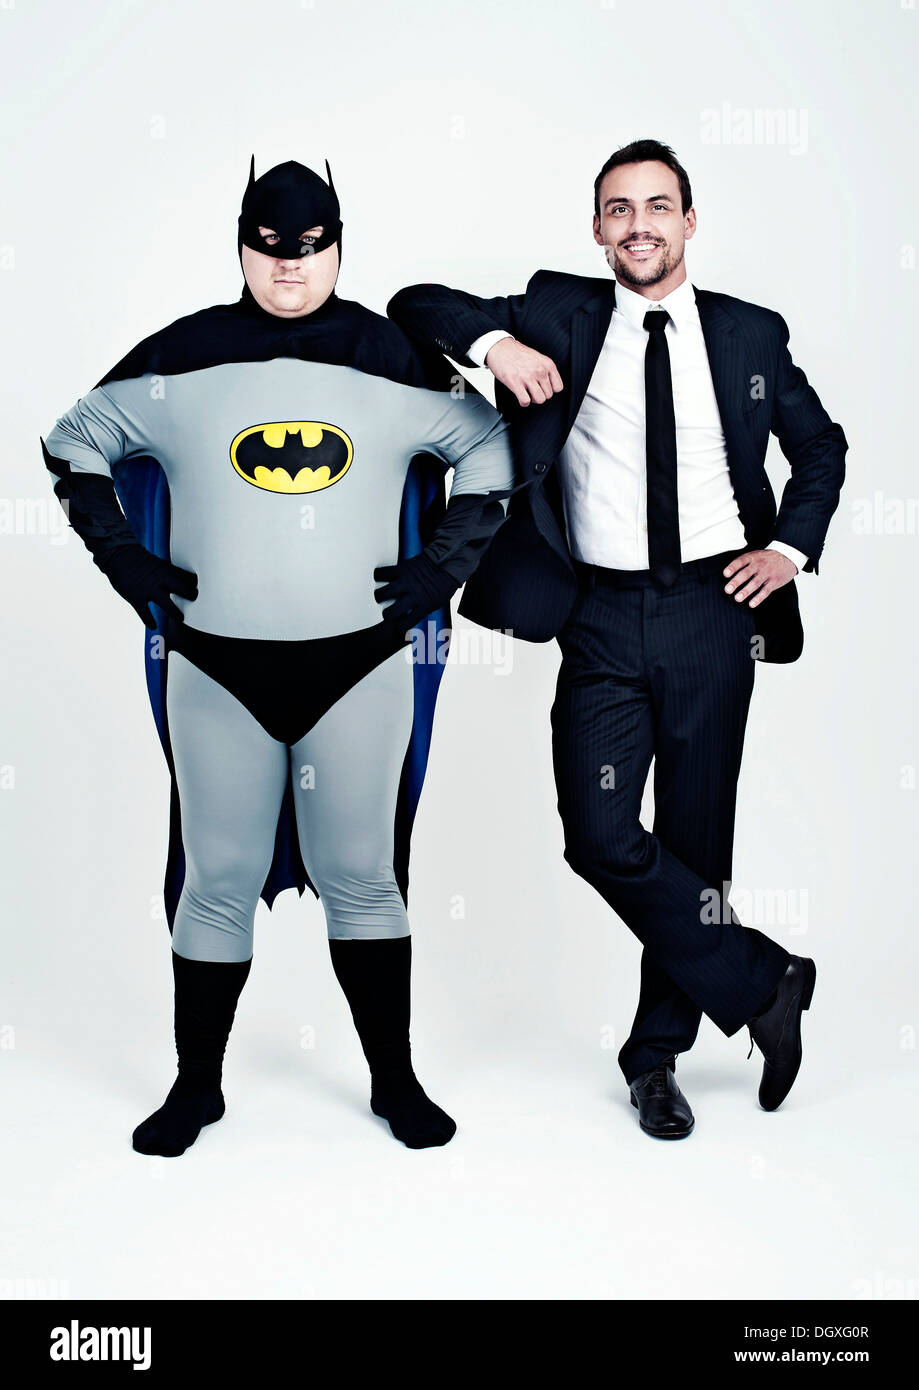 Athletic uomo indossa una tuta accanto a un uomo grasso vestito come un supereroe, Batman Foto Stock